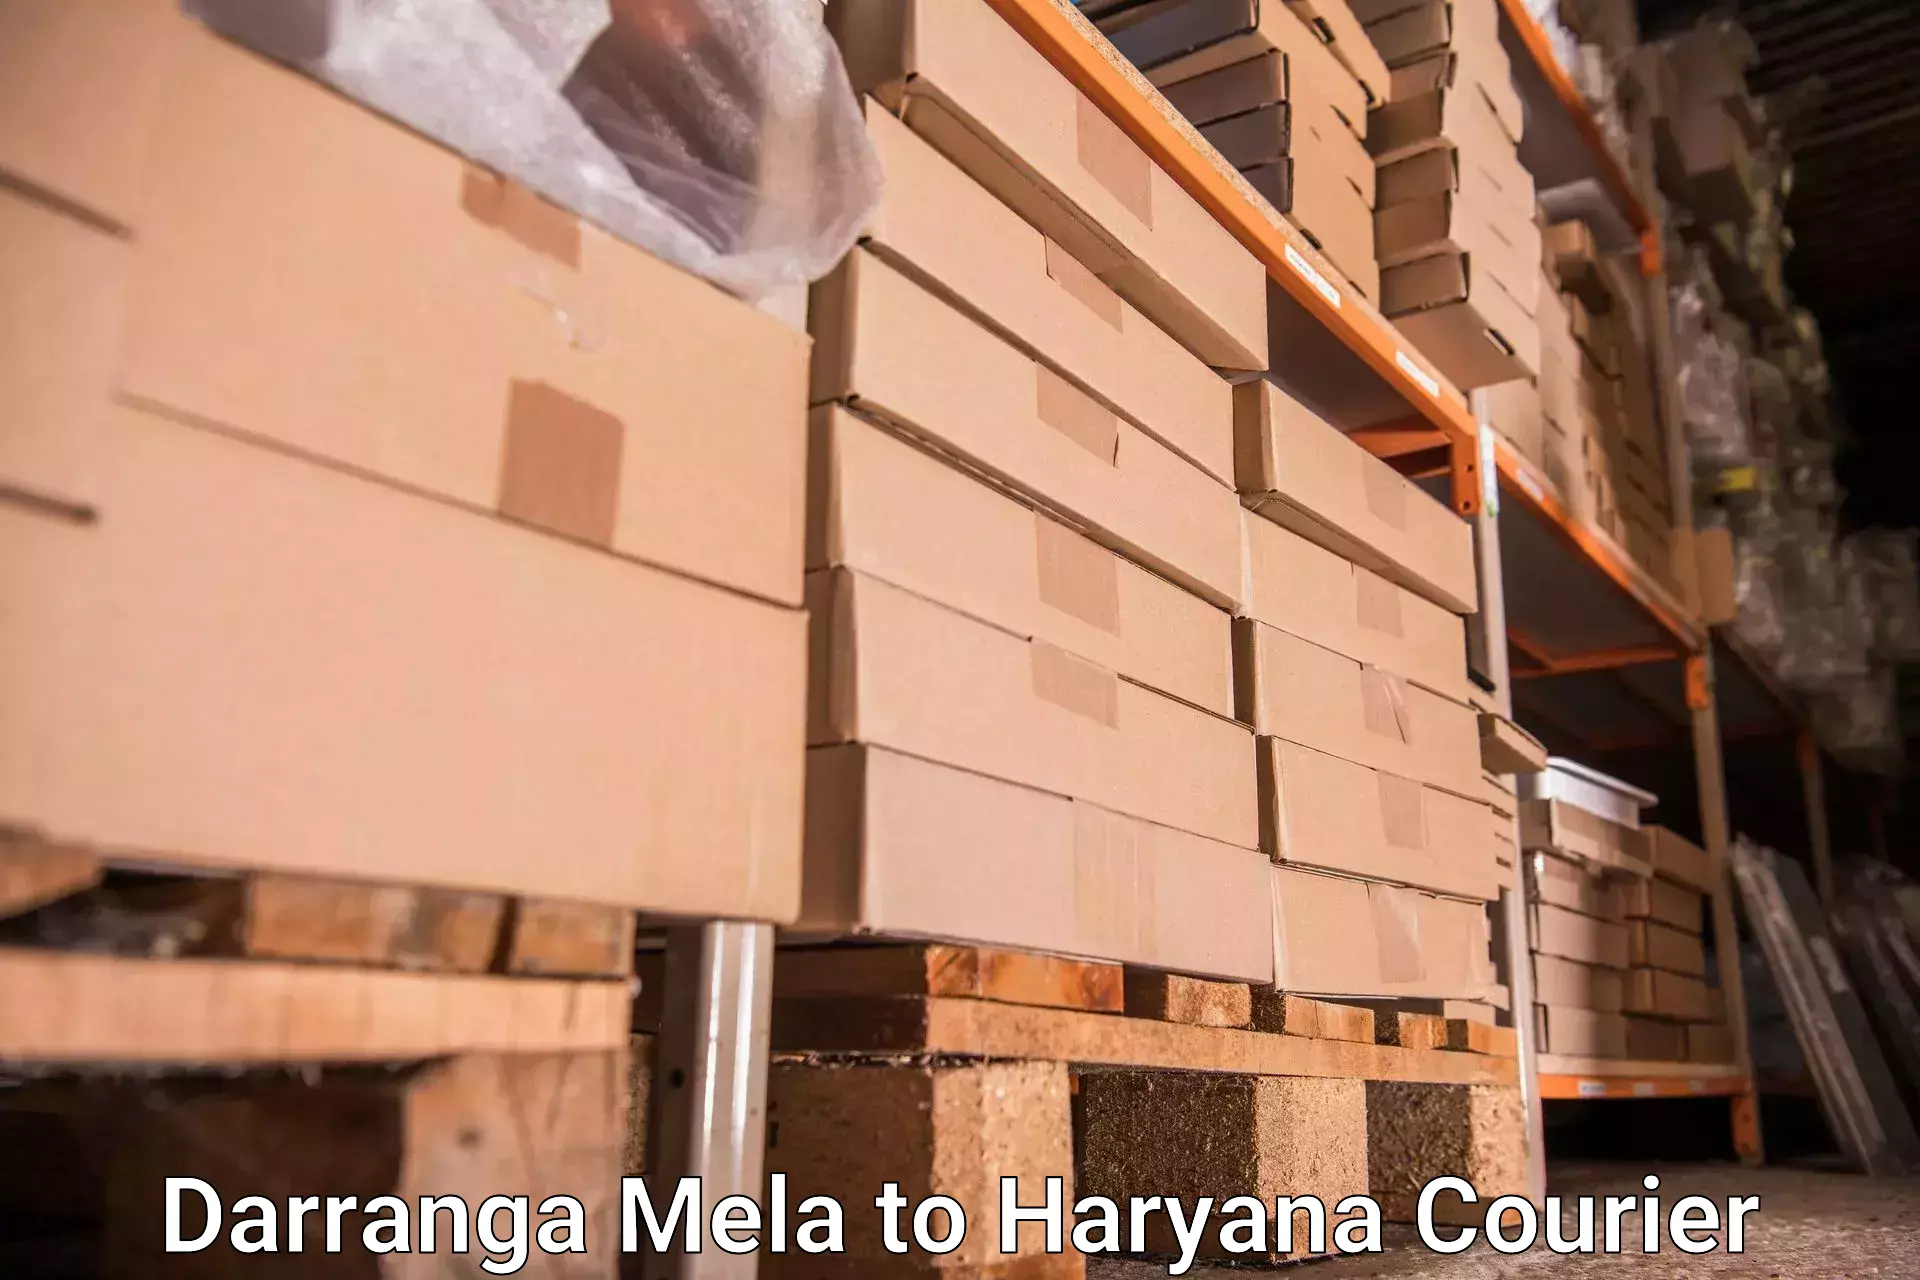 Baggage shipping optimization in Darranga Mela to Hansi